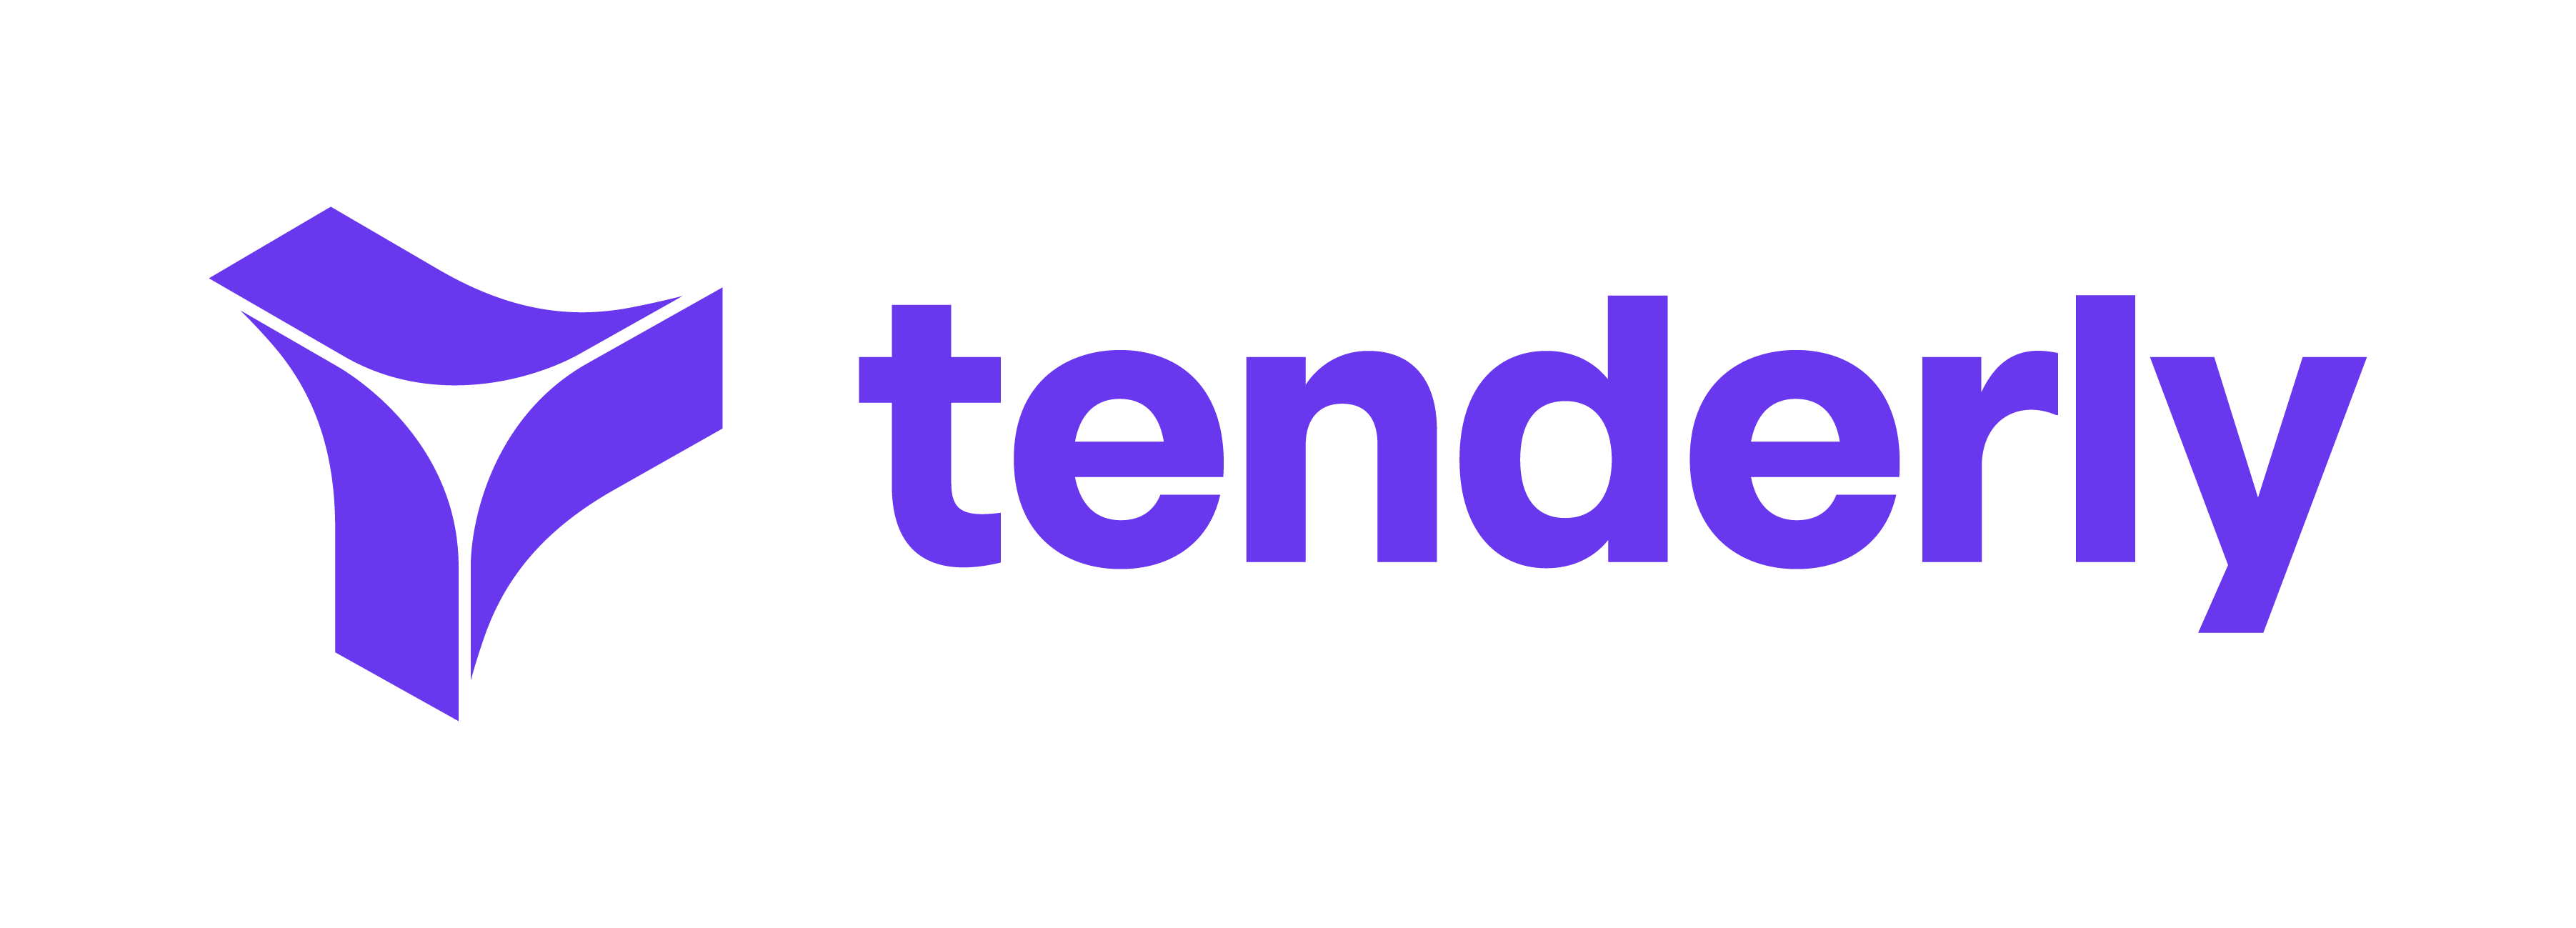 tenderly-logo